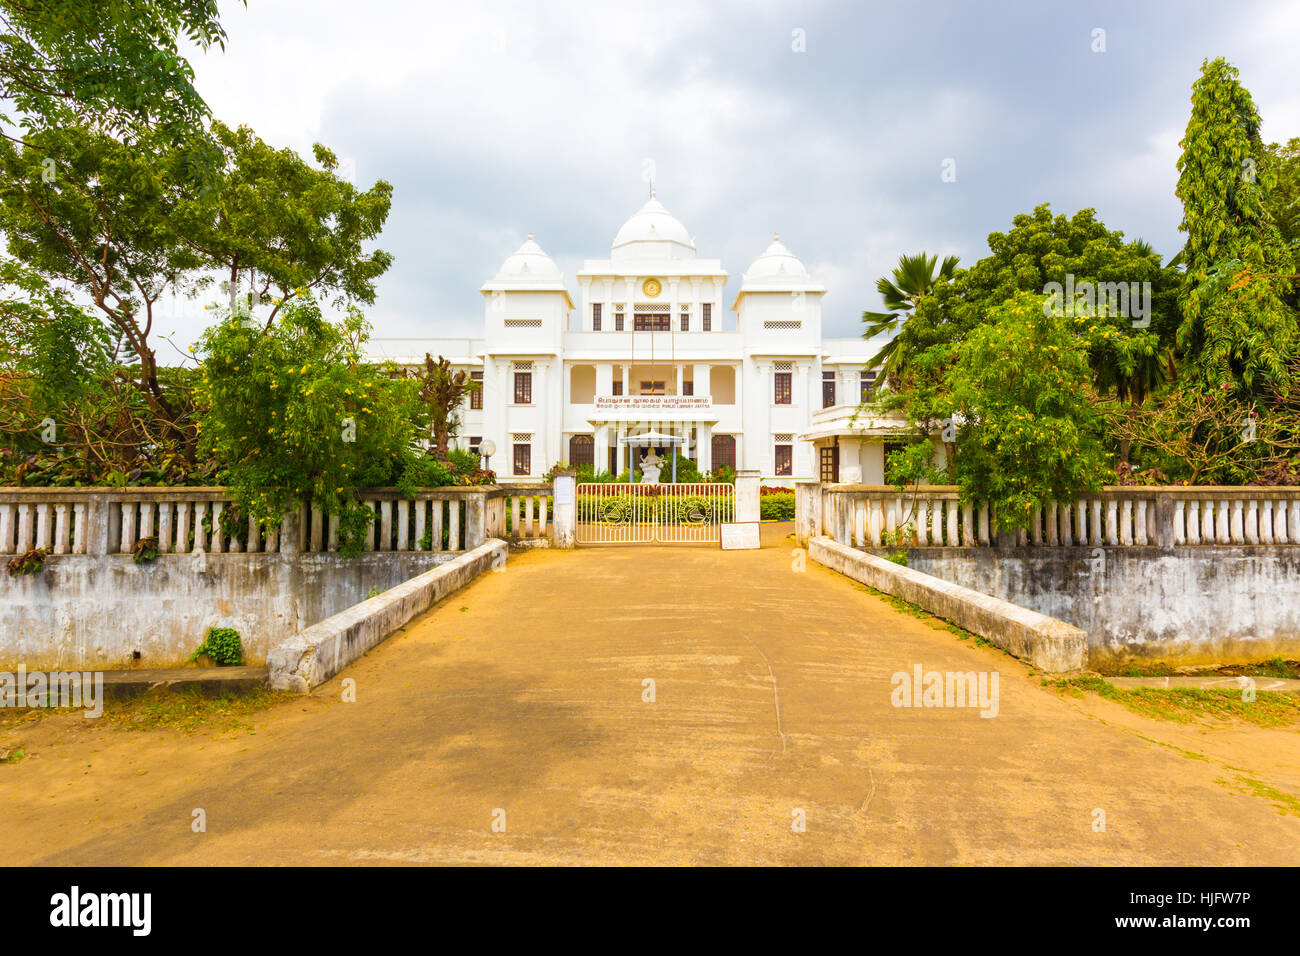 Einfahrt der Jaffna Public Library befindet sich in einem weißen britischen kolonialen Gebäude an einem bewölkten Tag in Sri Lanka Stockfoto